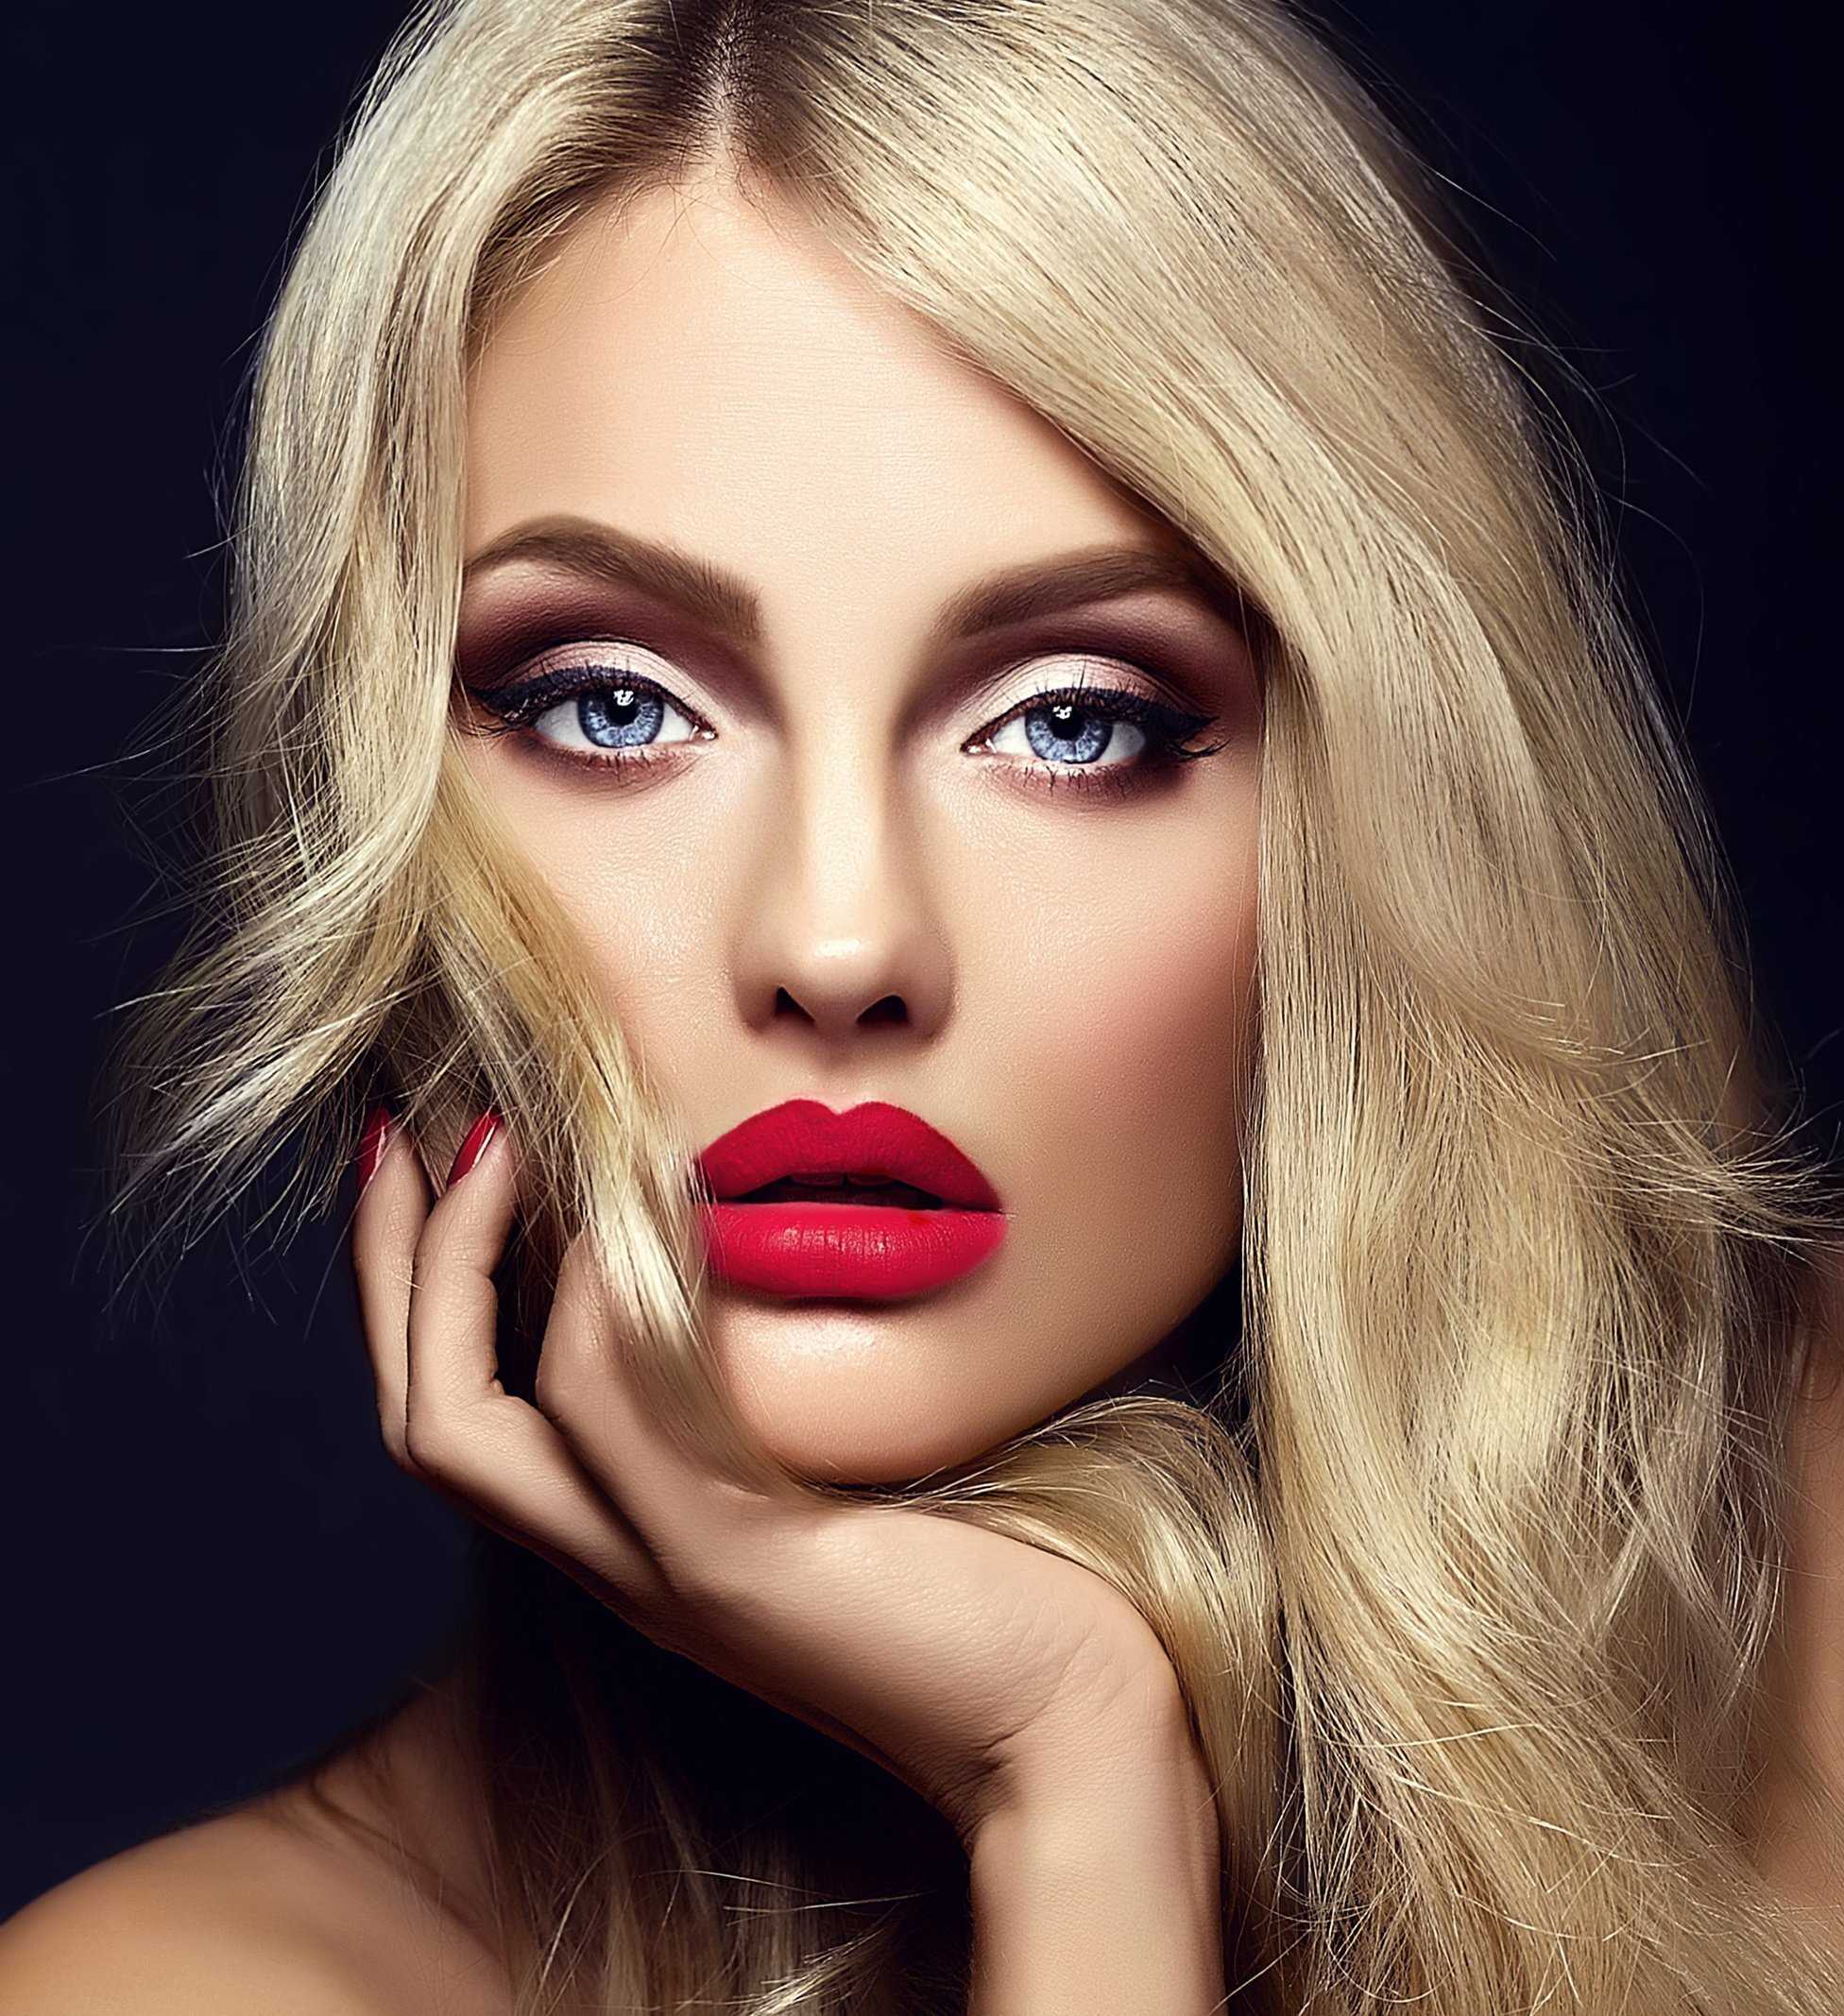 Помада для блондинок: выбор цвета и правила макияжа